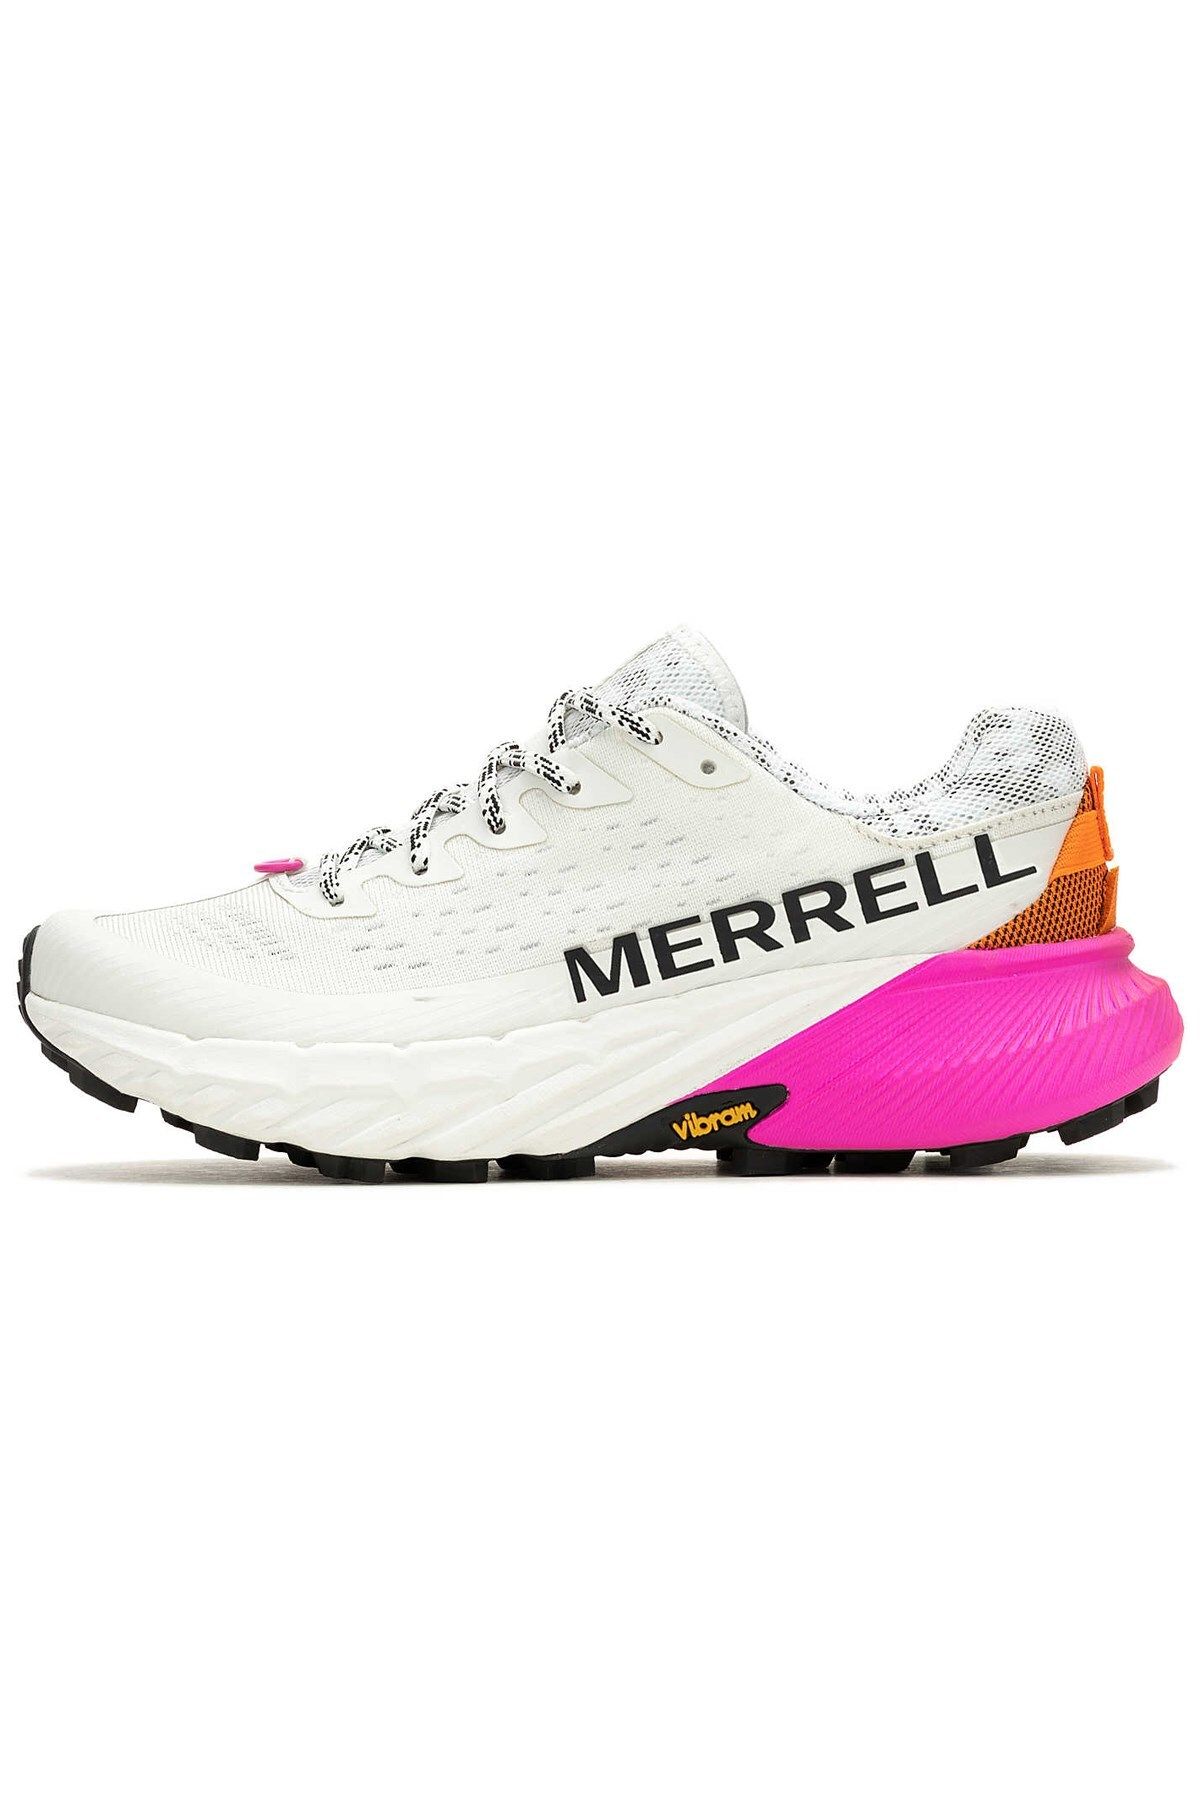 Merrell Agility Peak 5 Kadın Outdoor Ayakkabı J068234